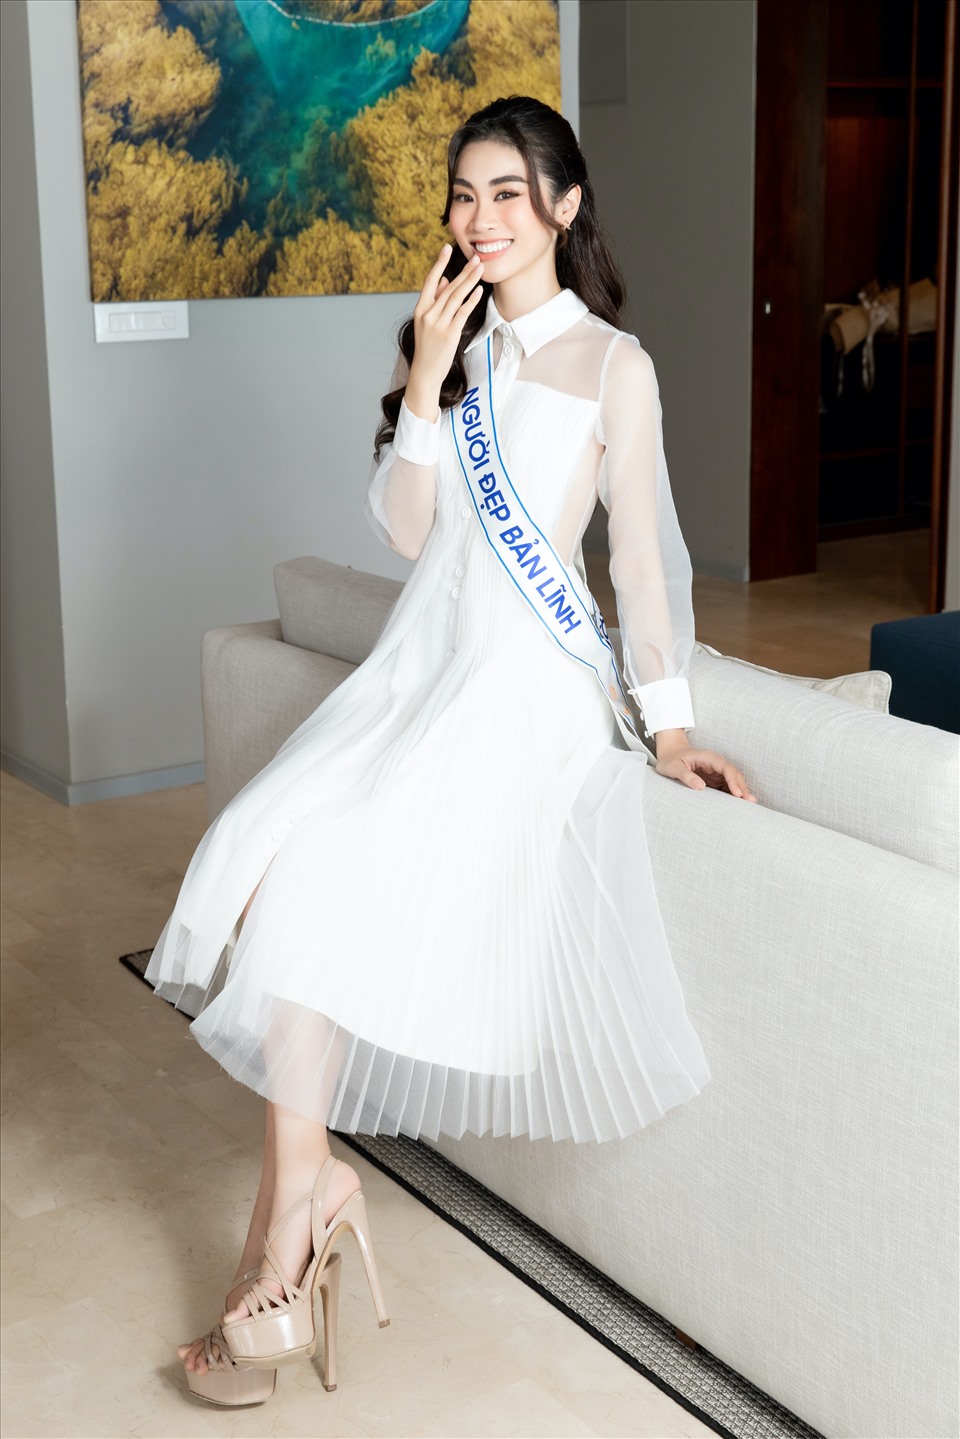 Nguyễn Thùy Linh cũng là cái tên tiếp theo đặt chân vào Top 20 Miss World Vietnam 2022 với danh hiệu “Người đẹp bản lĩnh“. Ảnh: NSCC